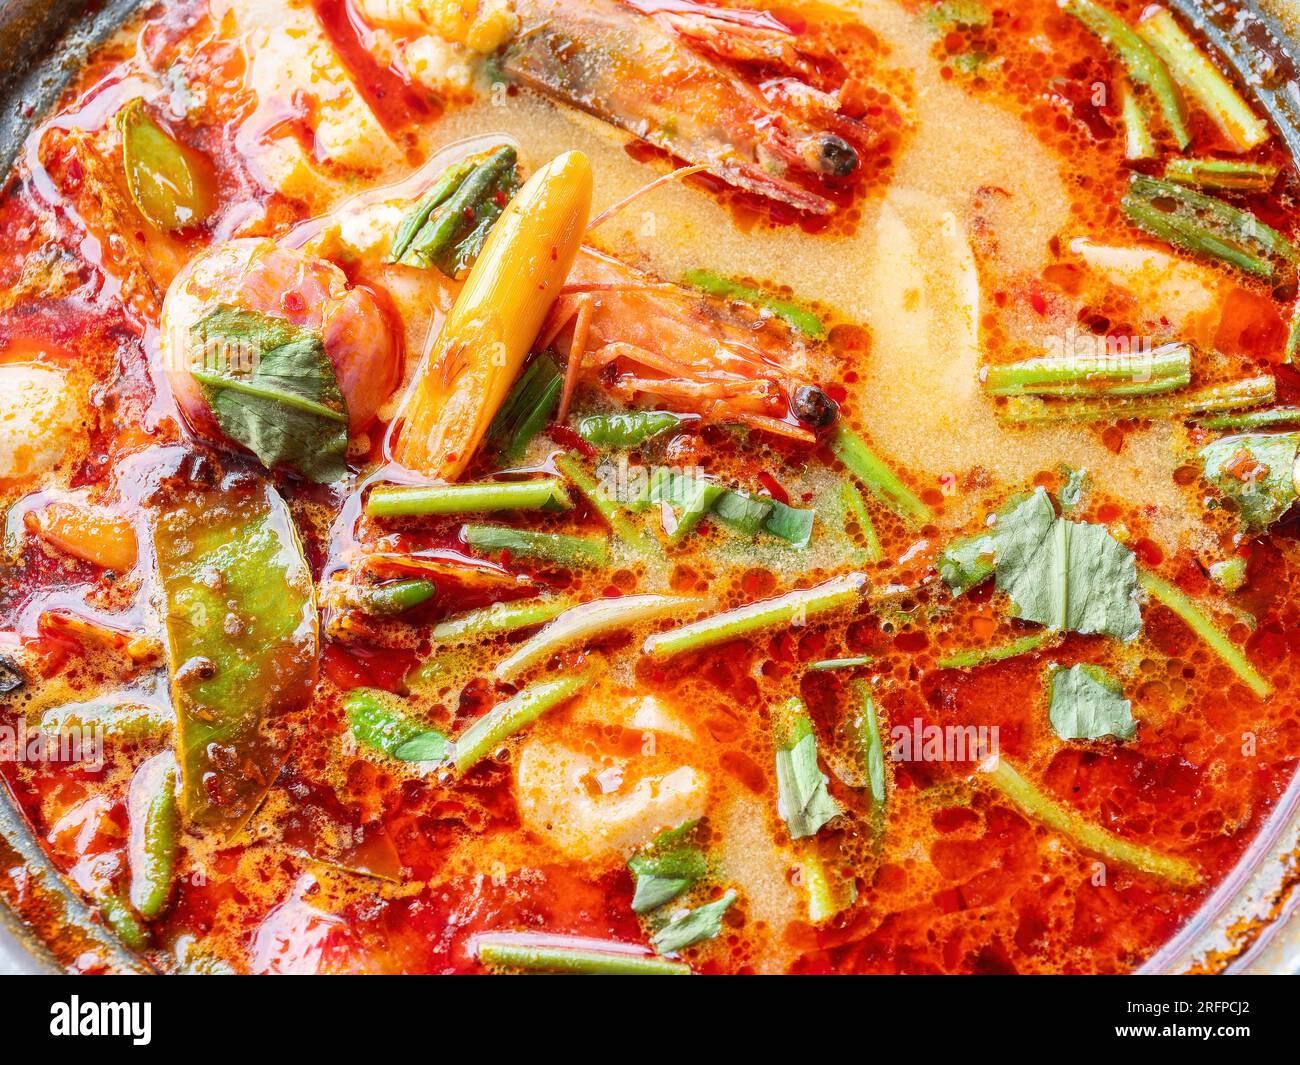 La célèbre soupe thaïlandaise, tom Yam kung, une soupe chaude et aigre avec des crevettes et des herbes, populaire parmi les touristes en Thaïlande ainsi que les thaïlandais. Banque D'Images